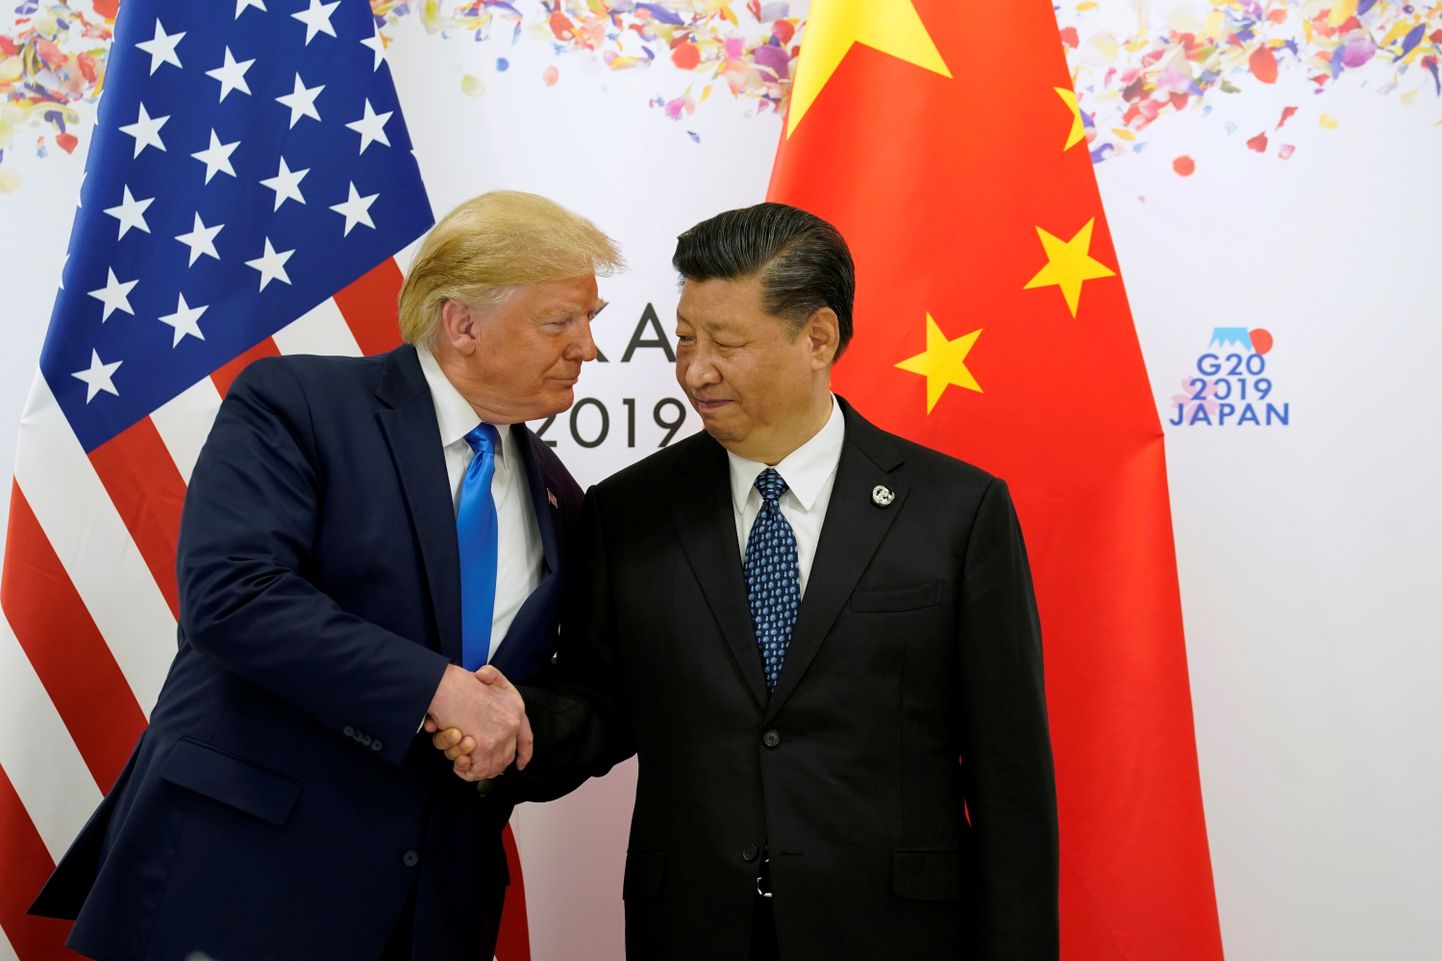 USA endine president Donald Trump kohtumas Hiina president Xi Jinpingiga G20 tippkohtumisel Jaapanis 29. juunil 2019. aastal.